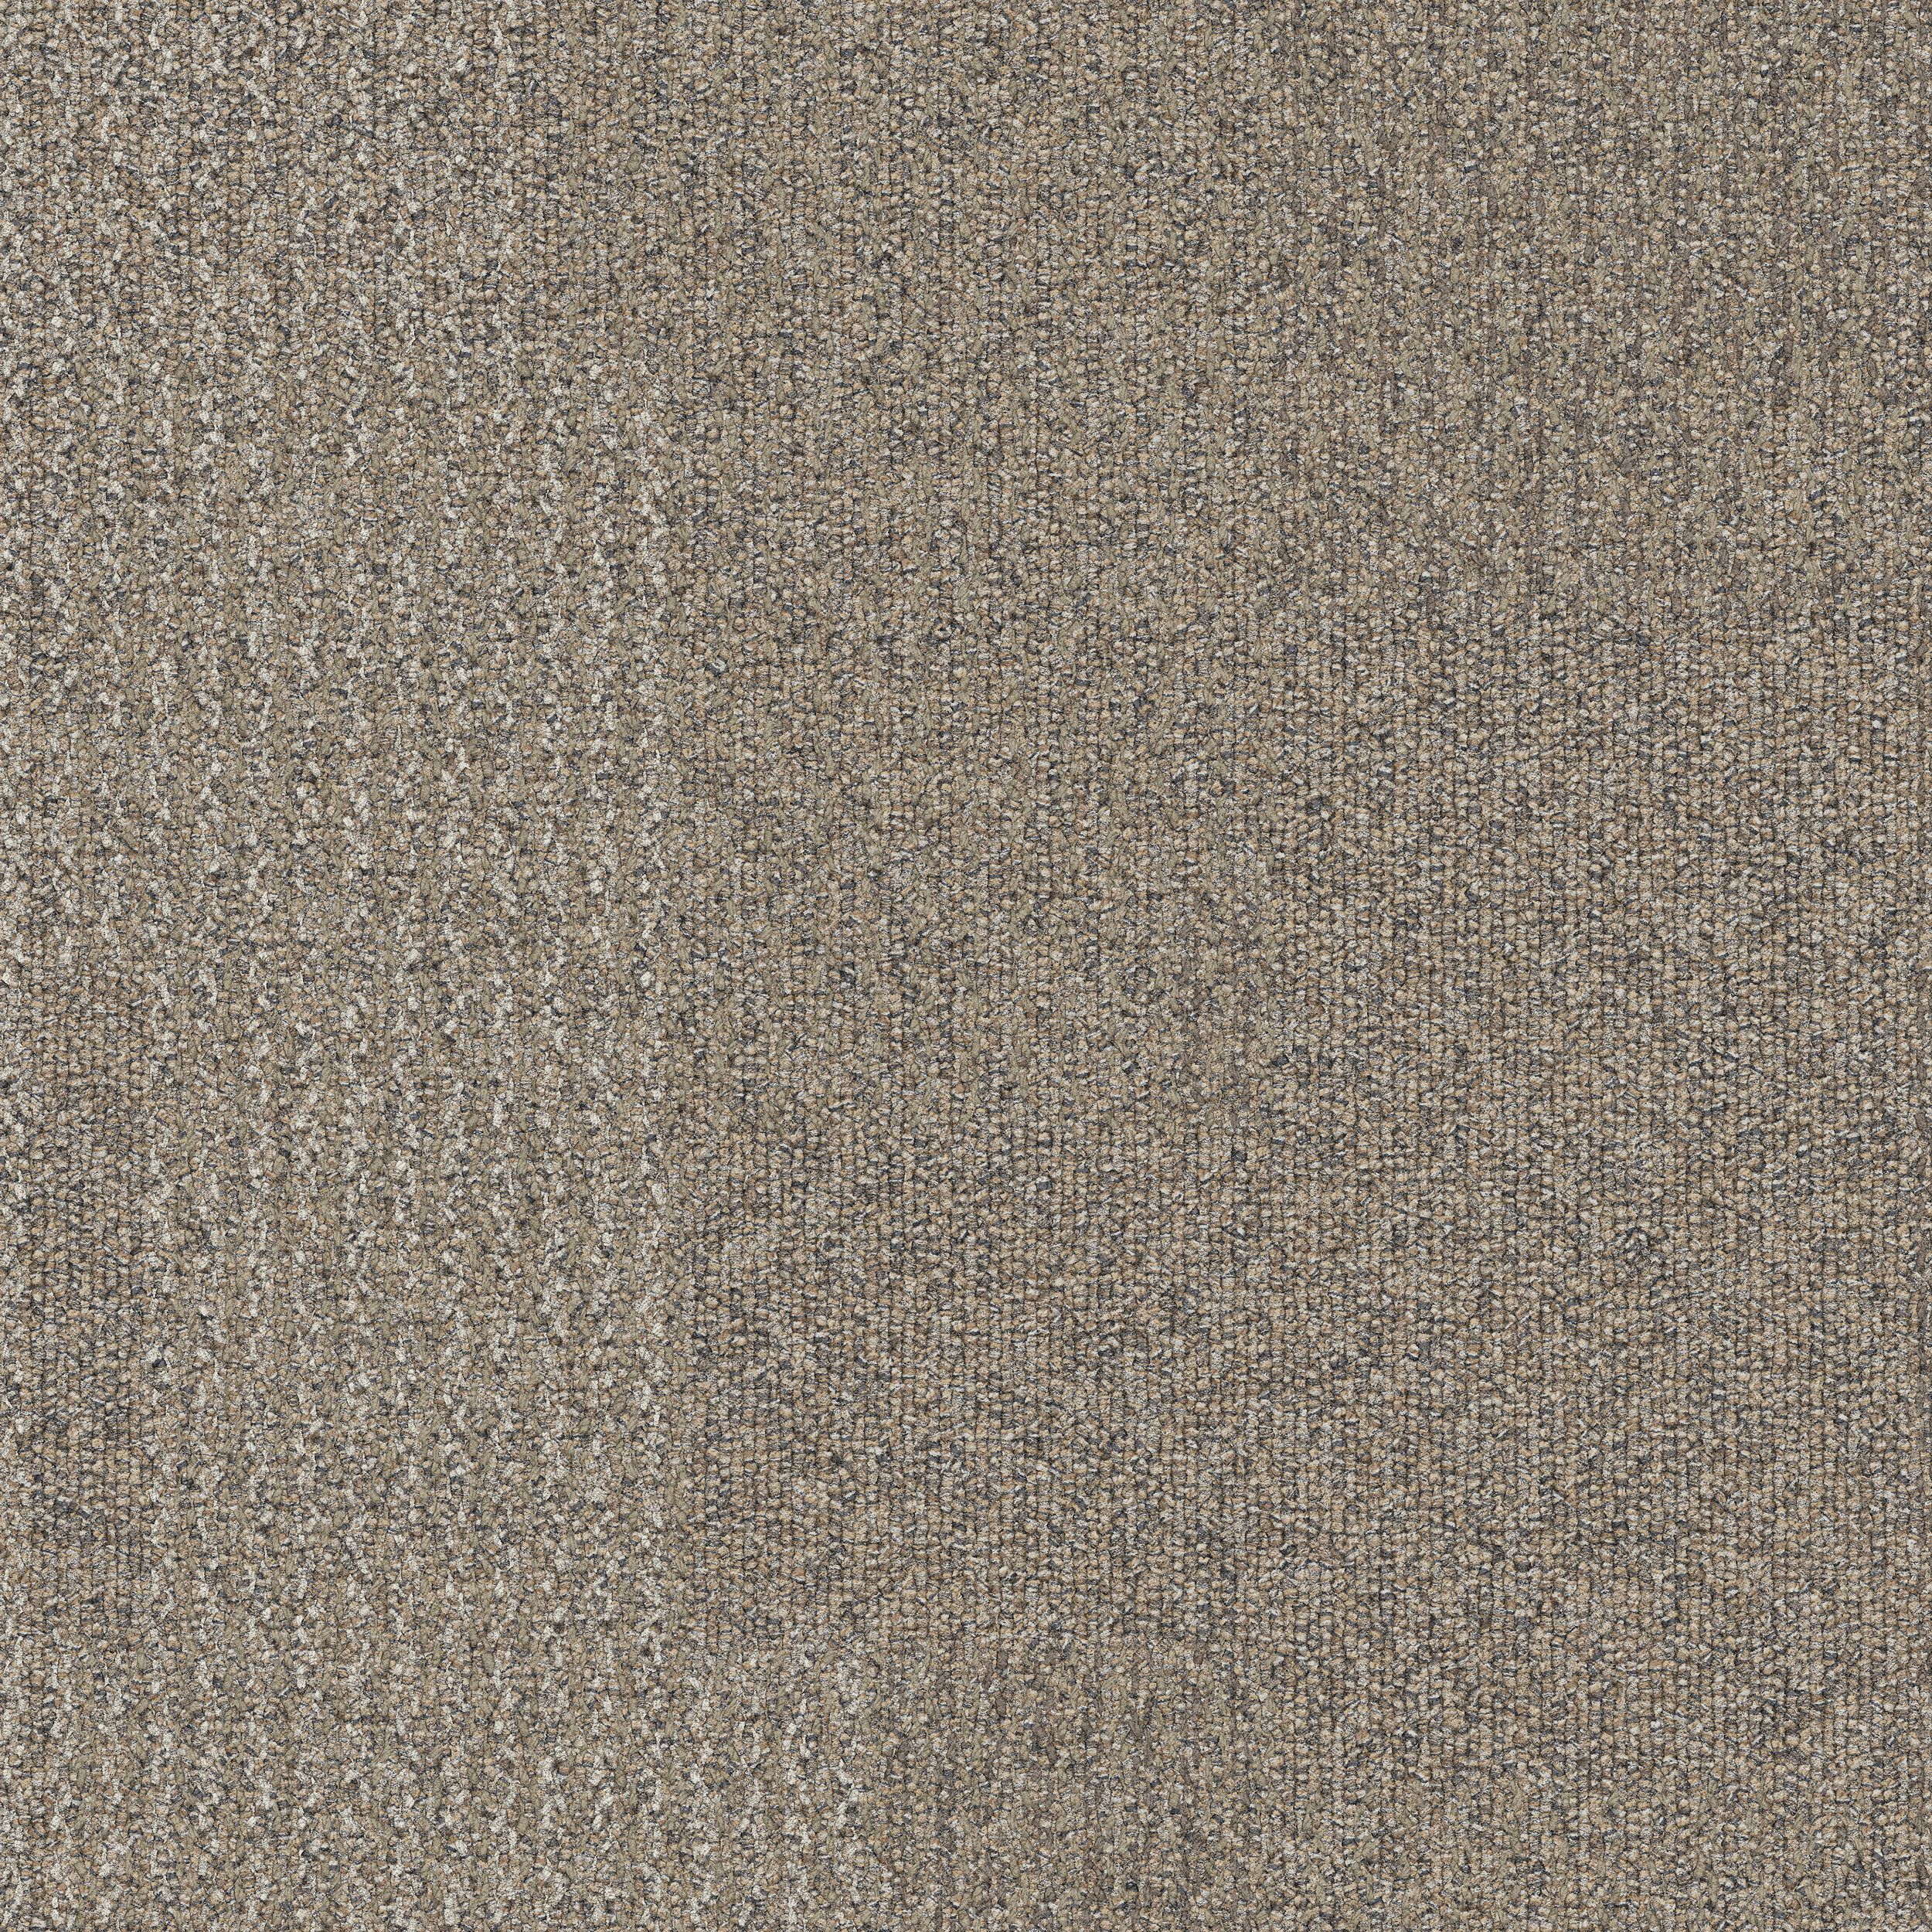 Transformation Carpet Tile Wadi variation.